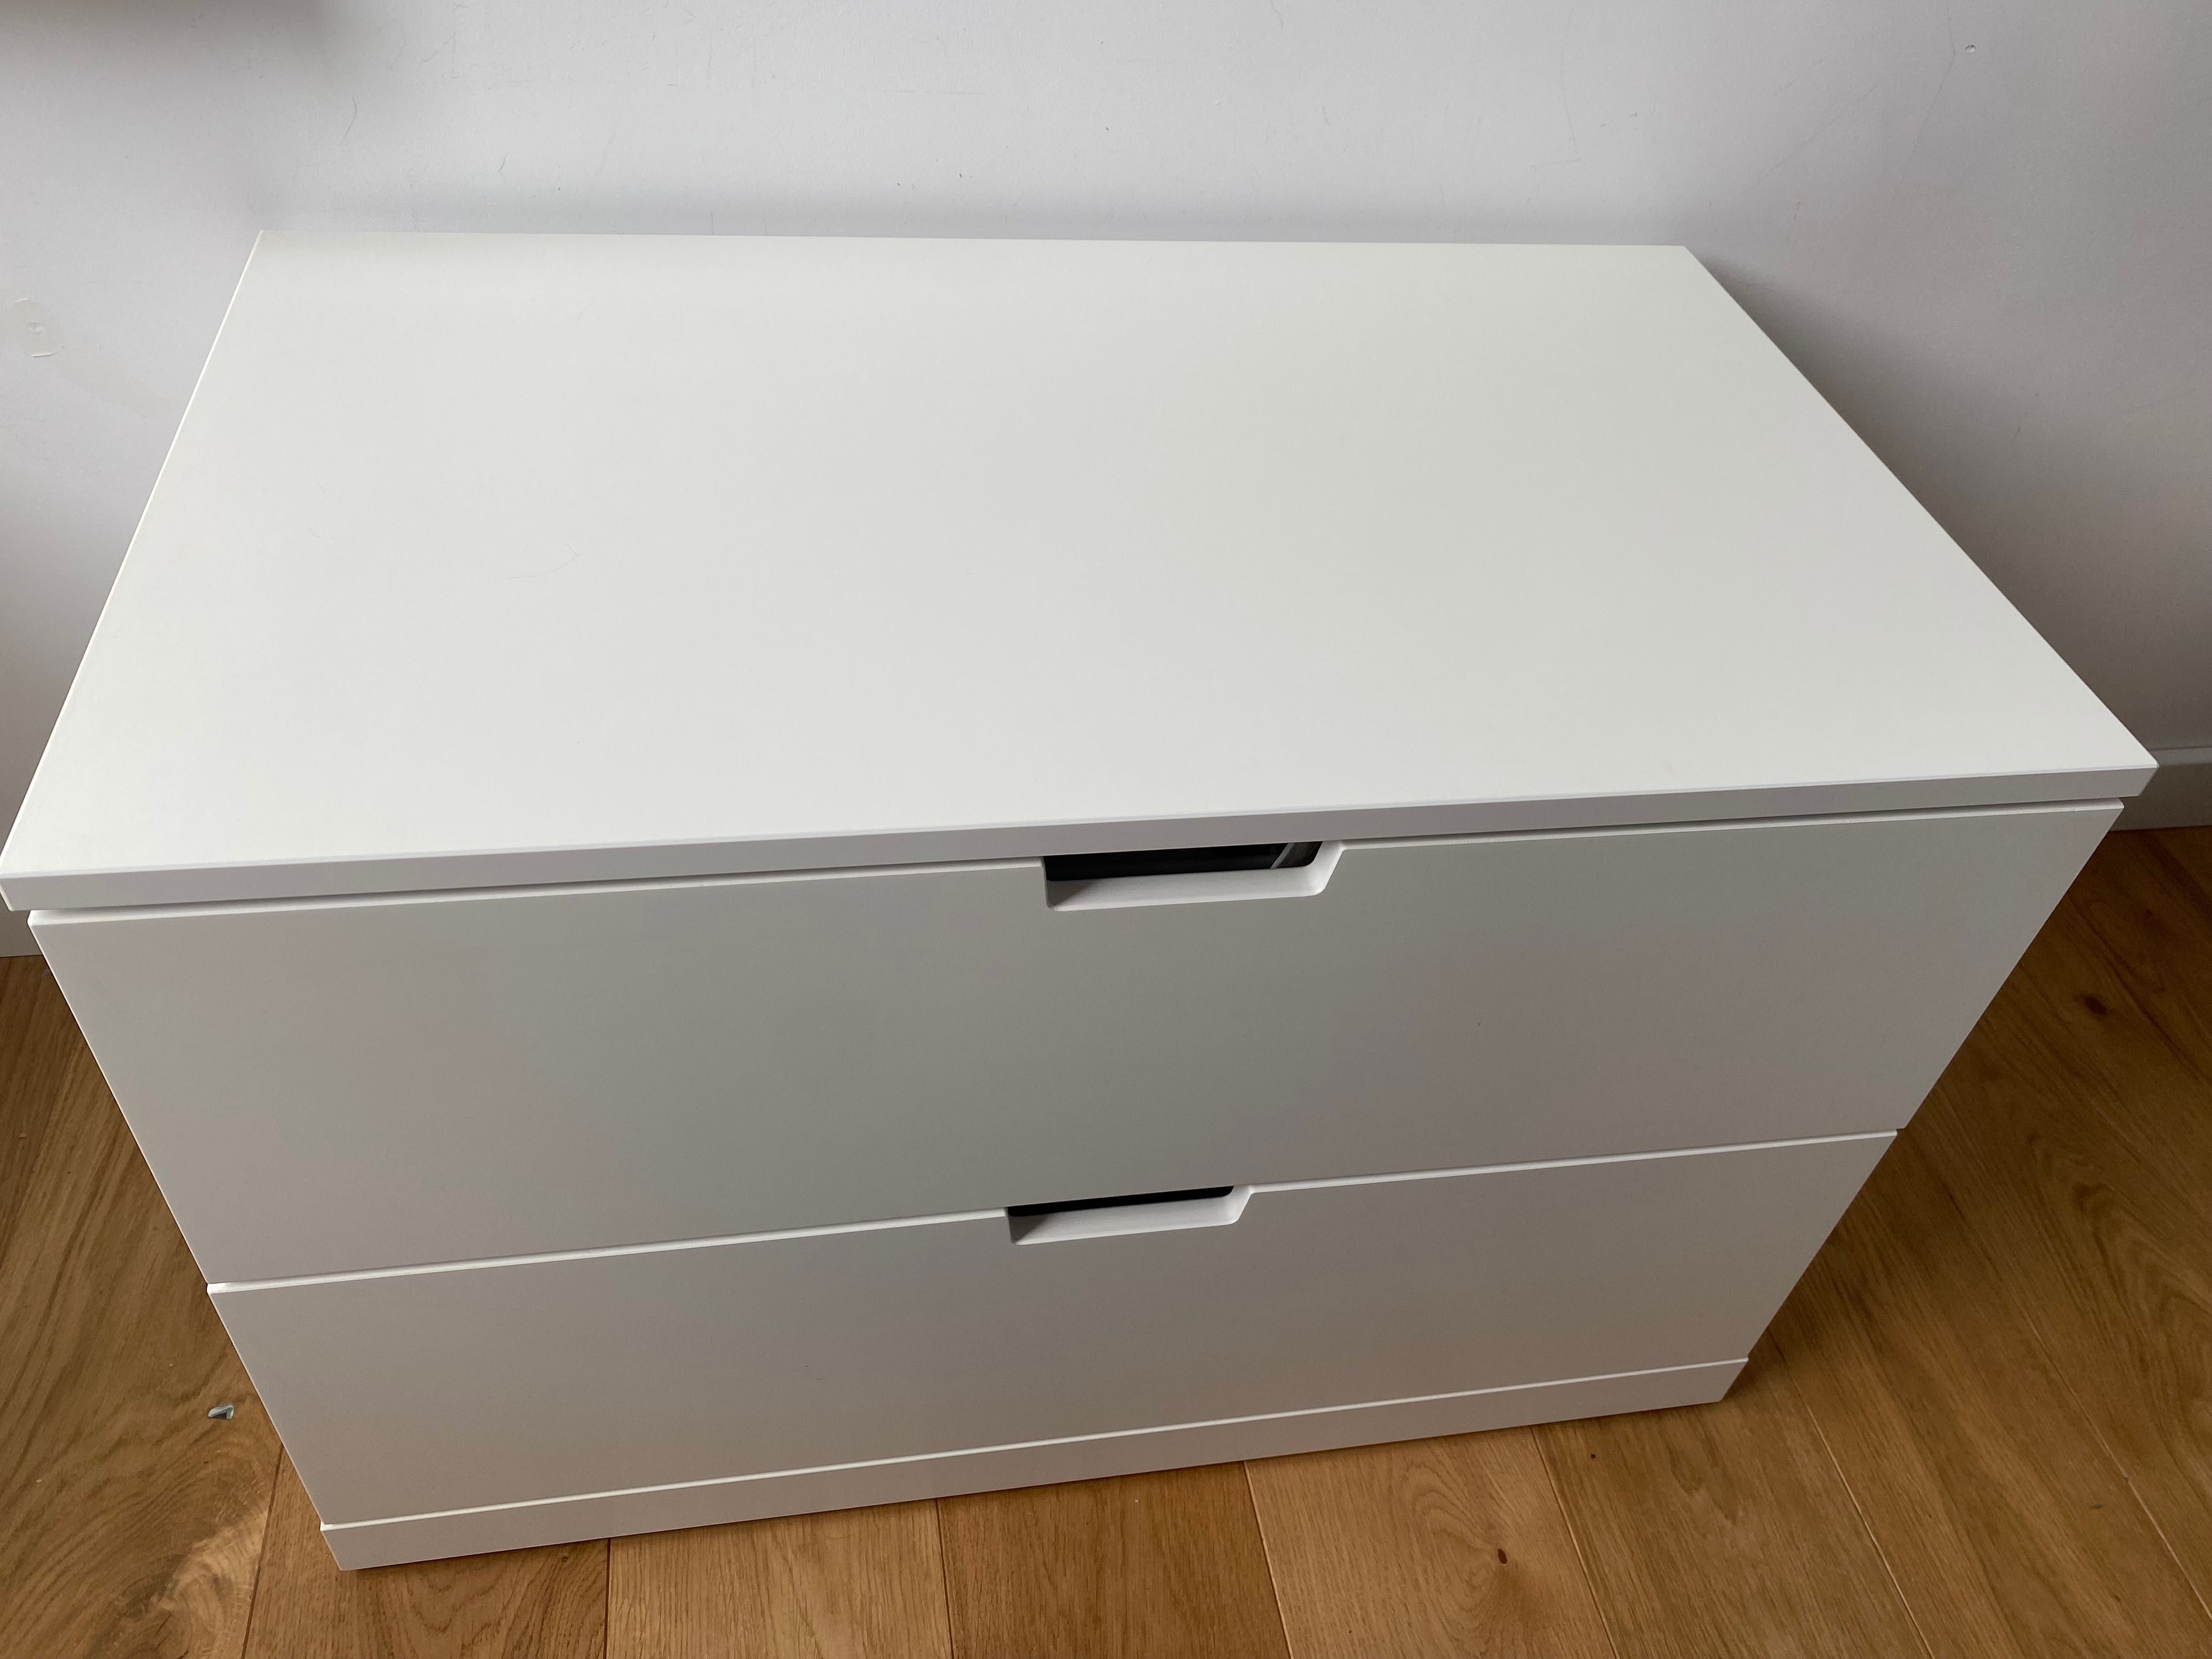 Biała komoda Ikea nordl 2 szuflady